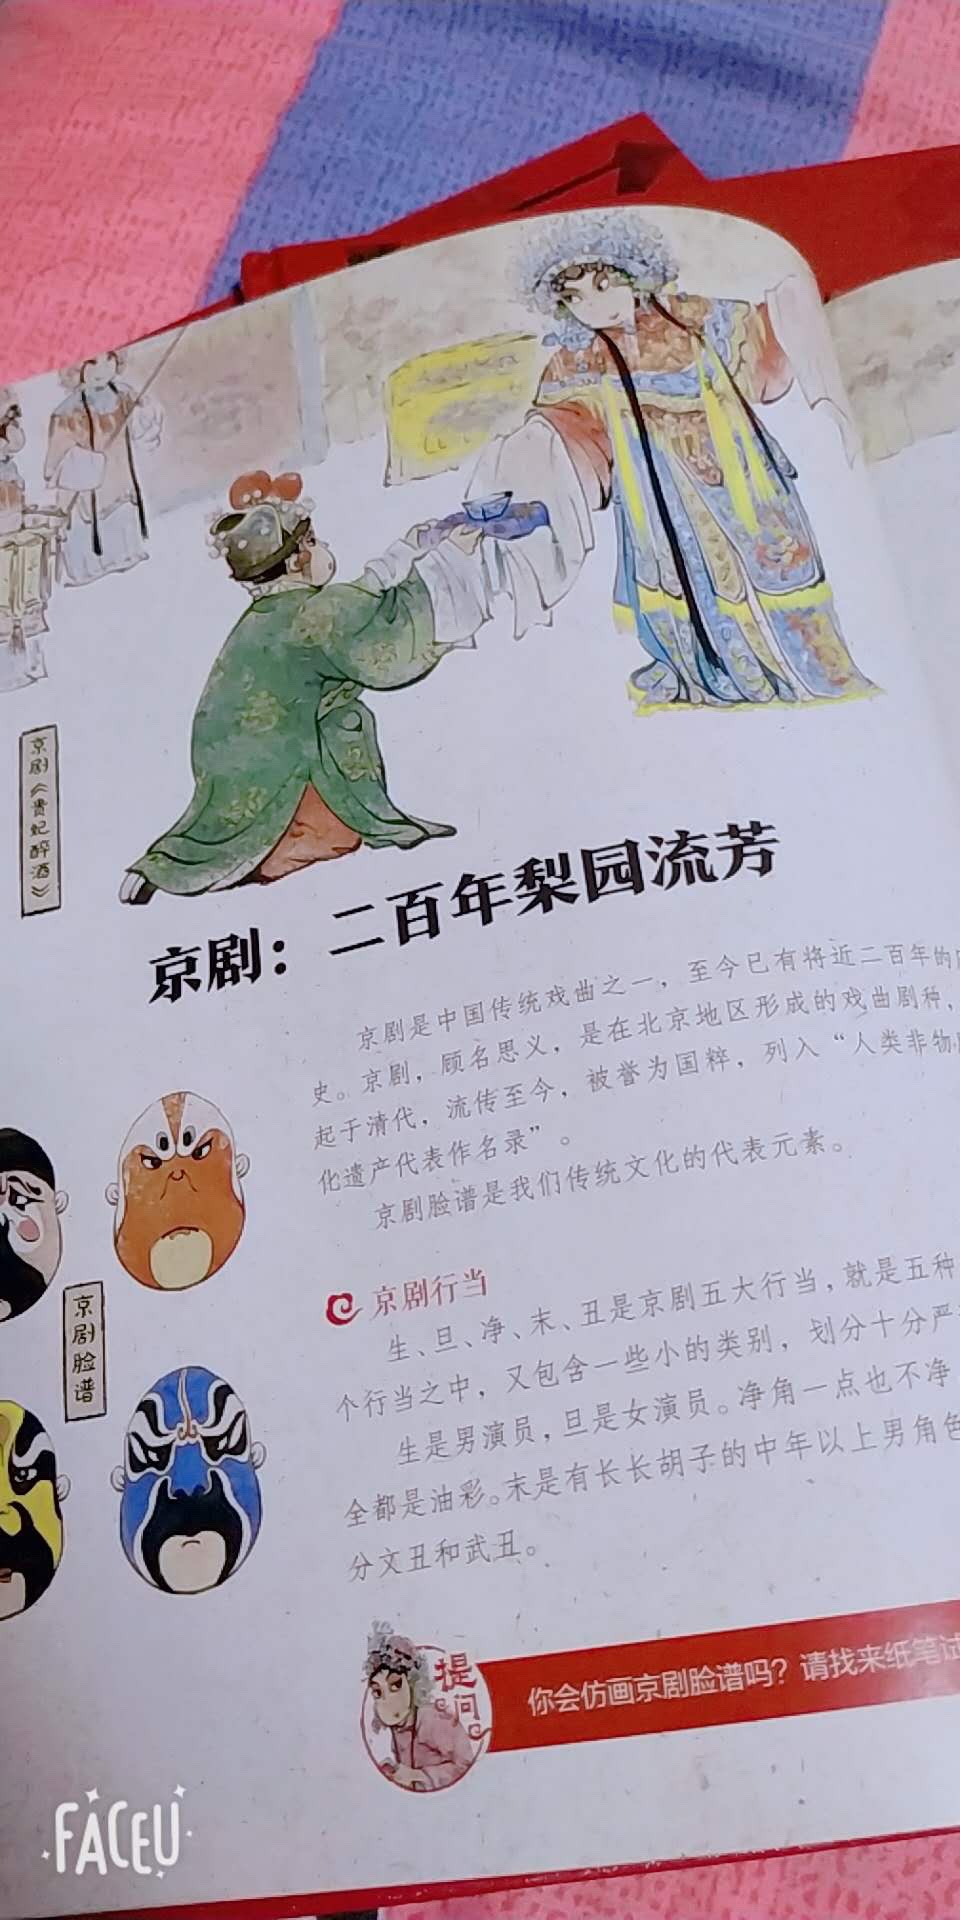 前段时间跟孩子一起看《中国诗词大会》对蒙曼老师的印象很是不错，看到有蒙曼老师主编的这套关于中国传统文化的书，就买来和孩子们一起品读。首先这套书真的不像别的传统文化的书那样枯燥无味，语言风趣幽默，小孩子理解起来比较容易；其次，这套书的画面特别漂亮，满满的中国风！能够将中国的传统文化做的真的精致，也可见编著者的良苦用心了！毕竟是名家主编，必须推荐！